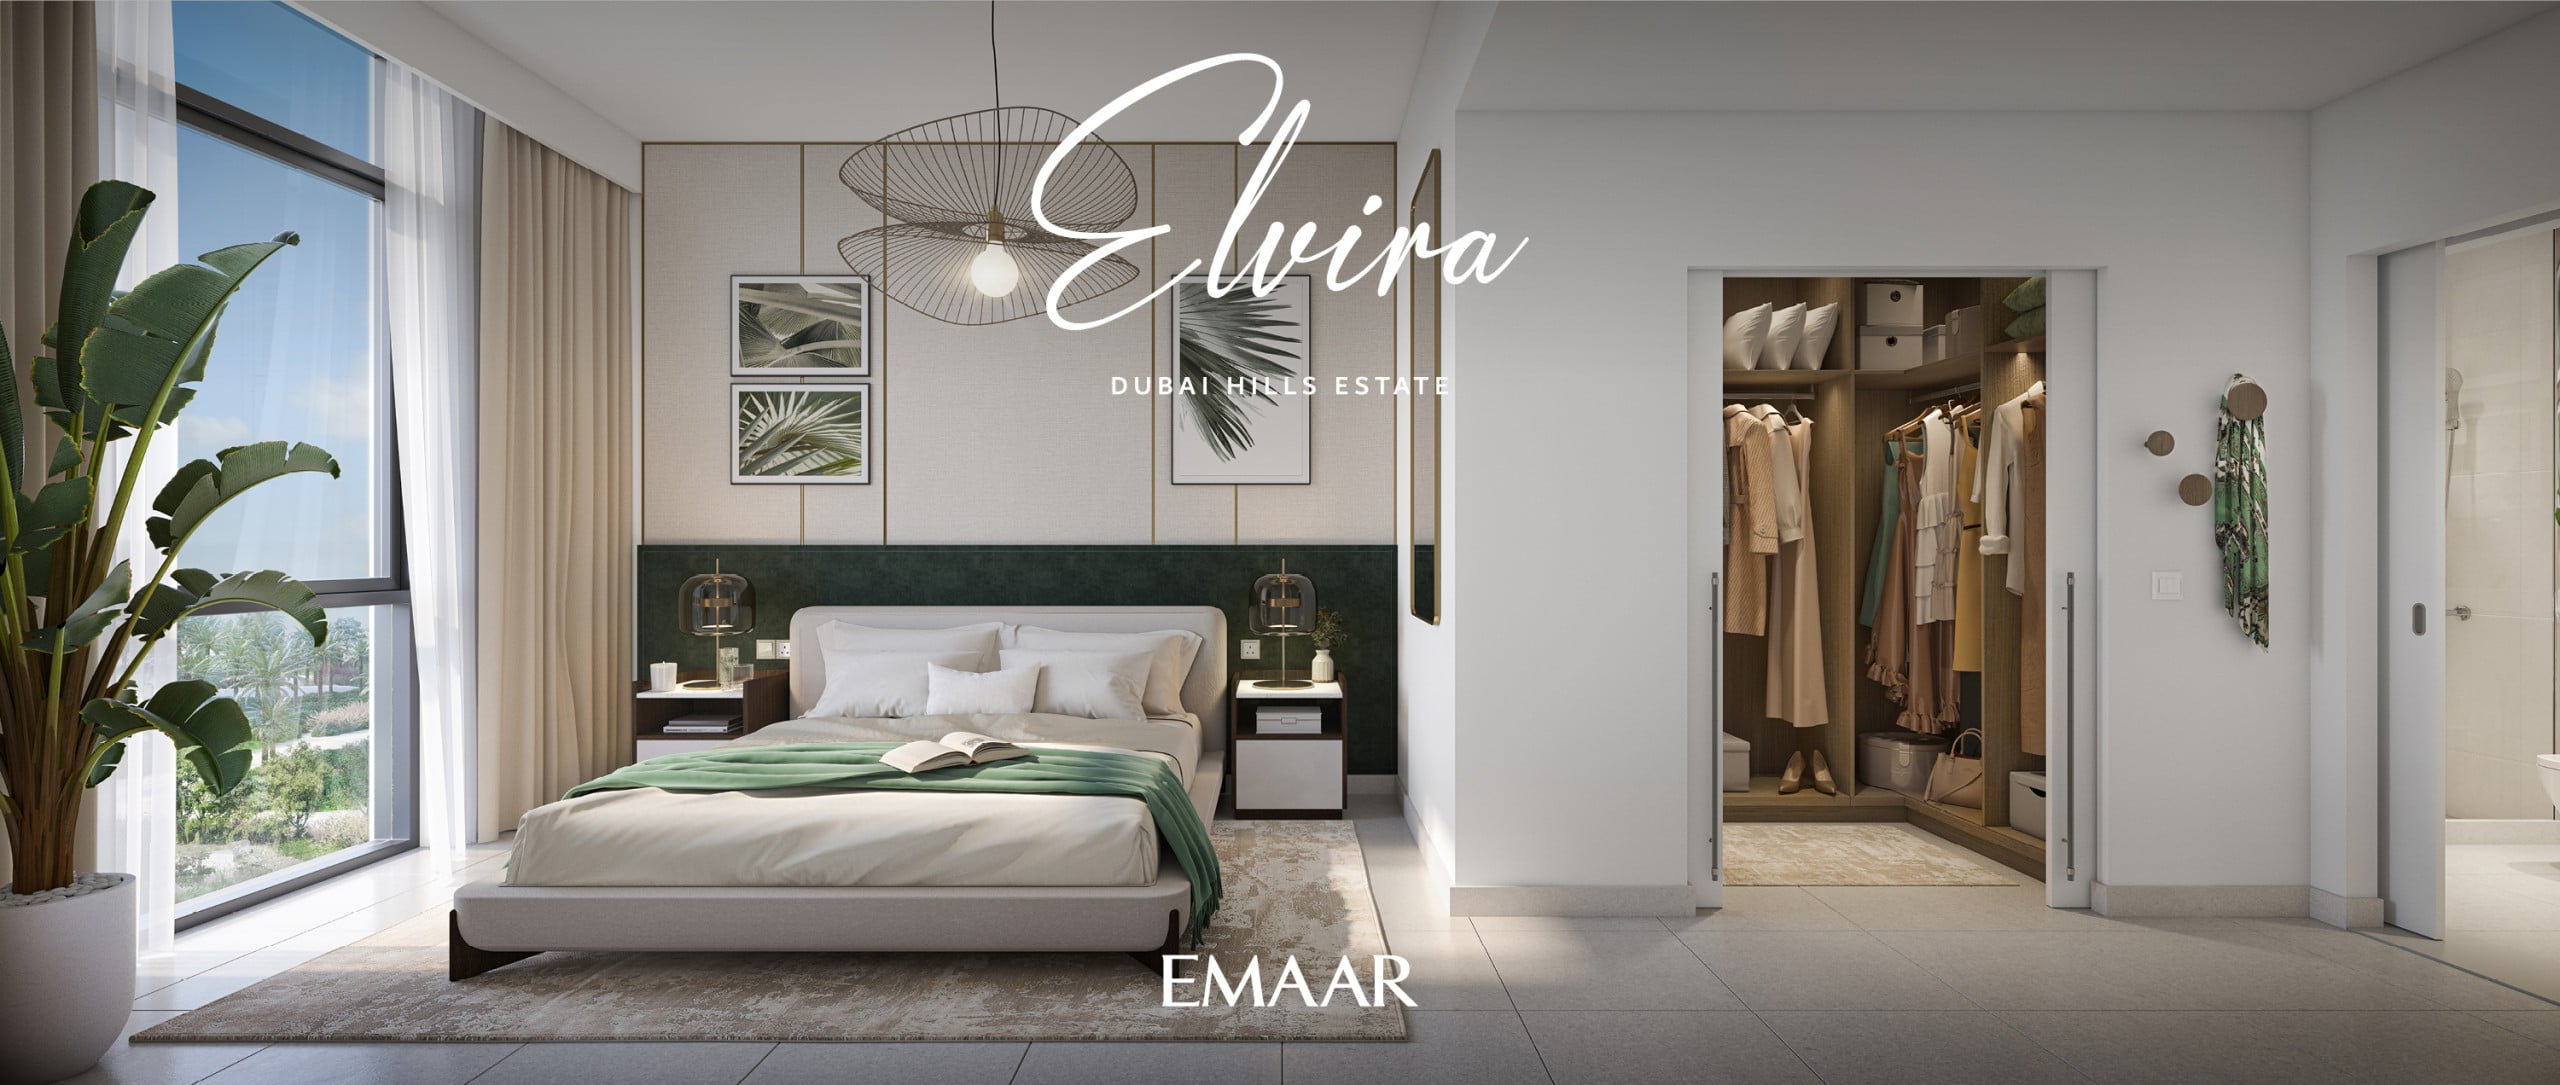 DHE ELVIRA RENDERS14 scaled - Immobilier Dubai